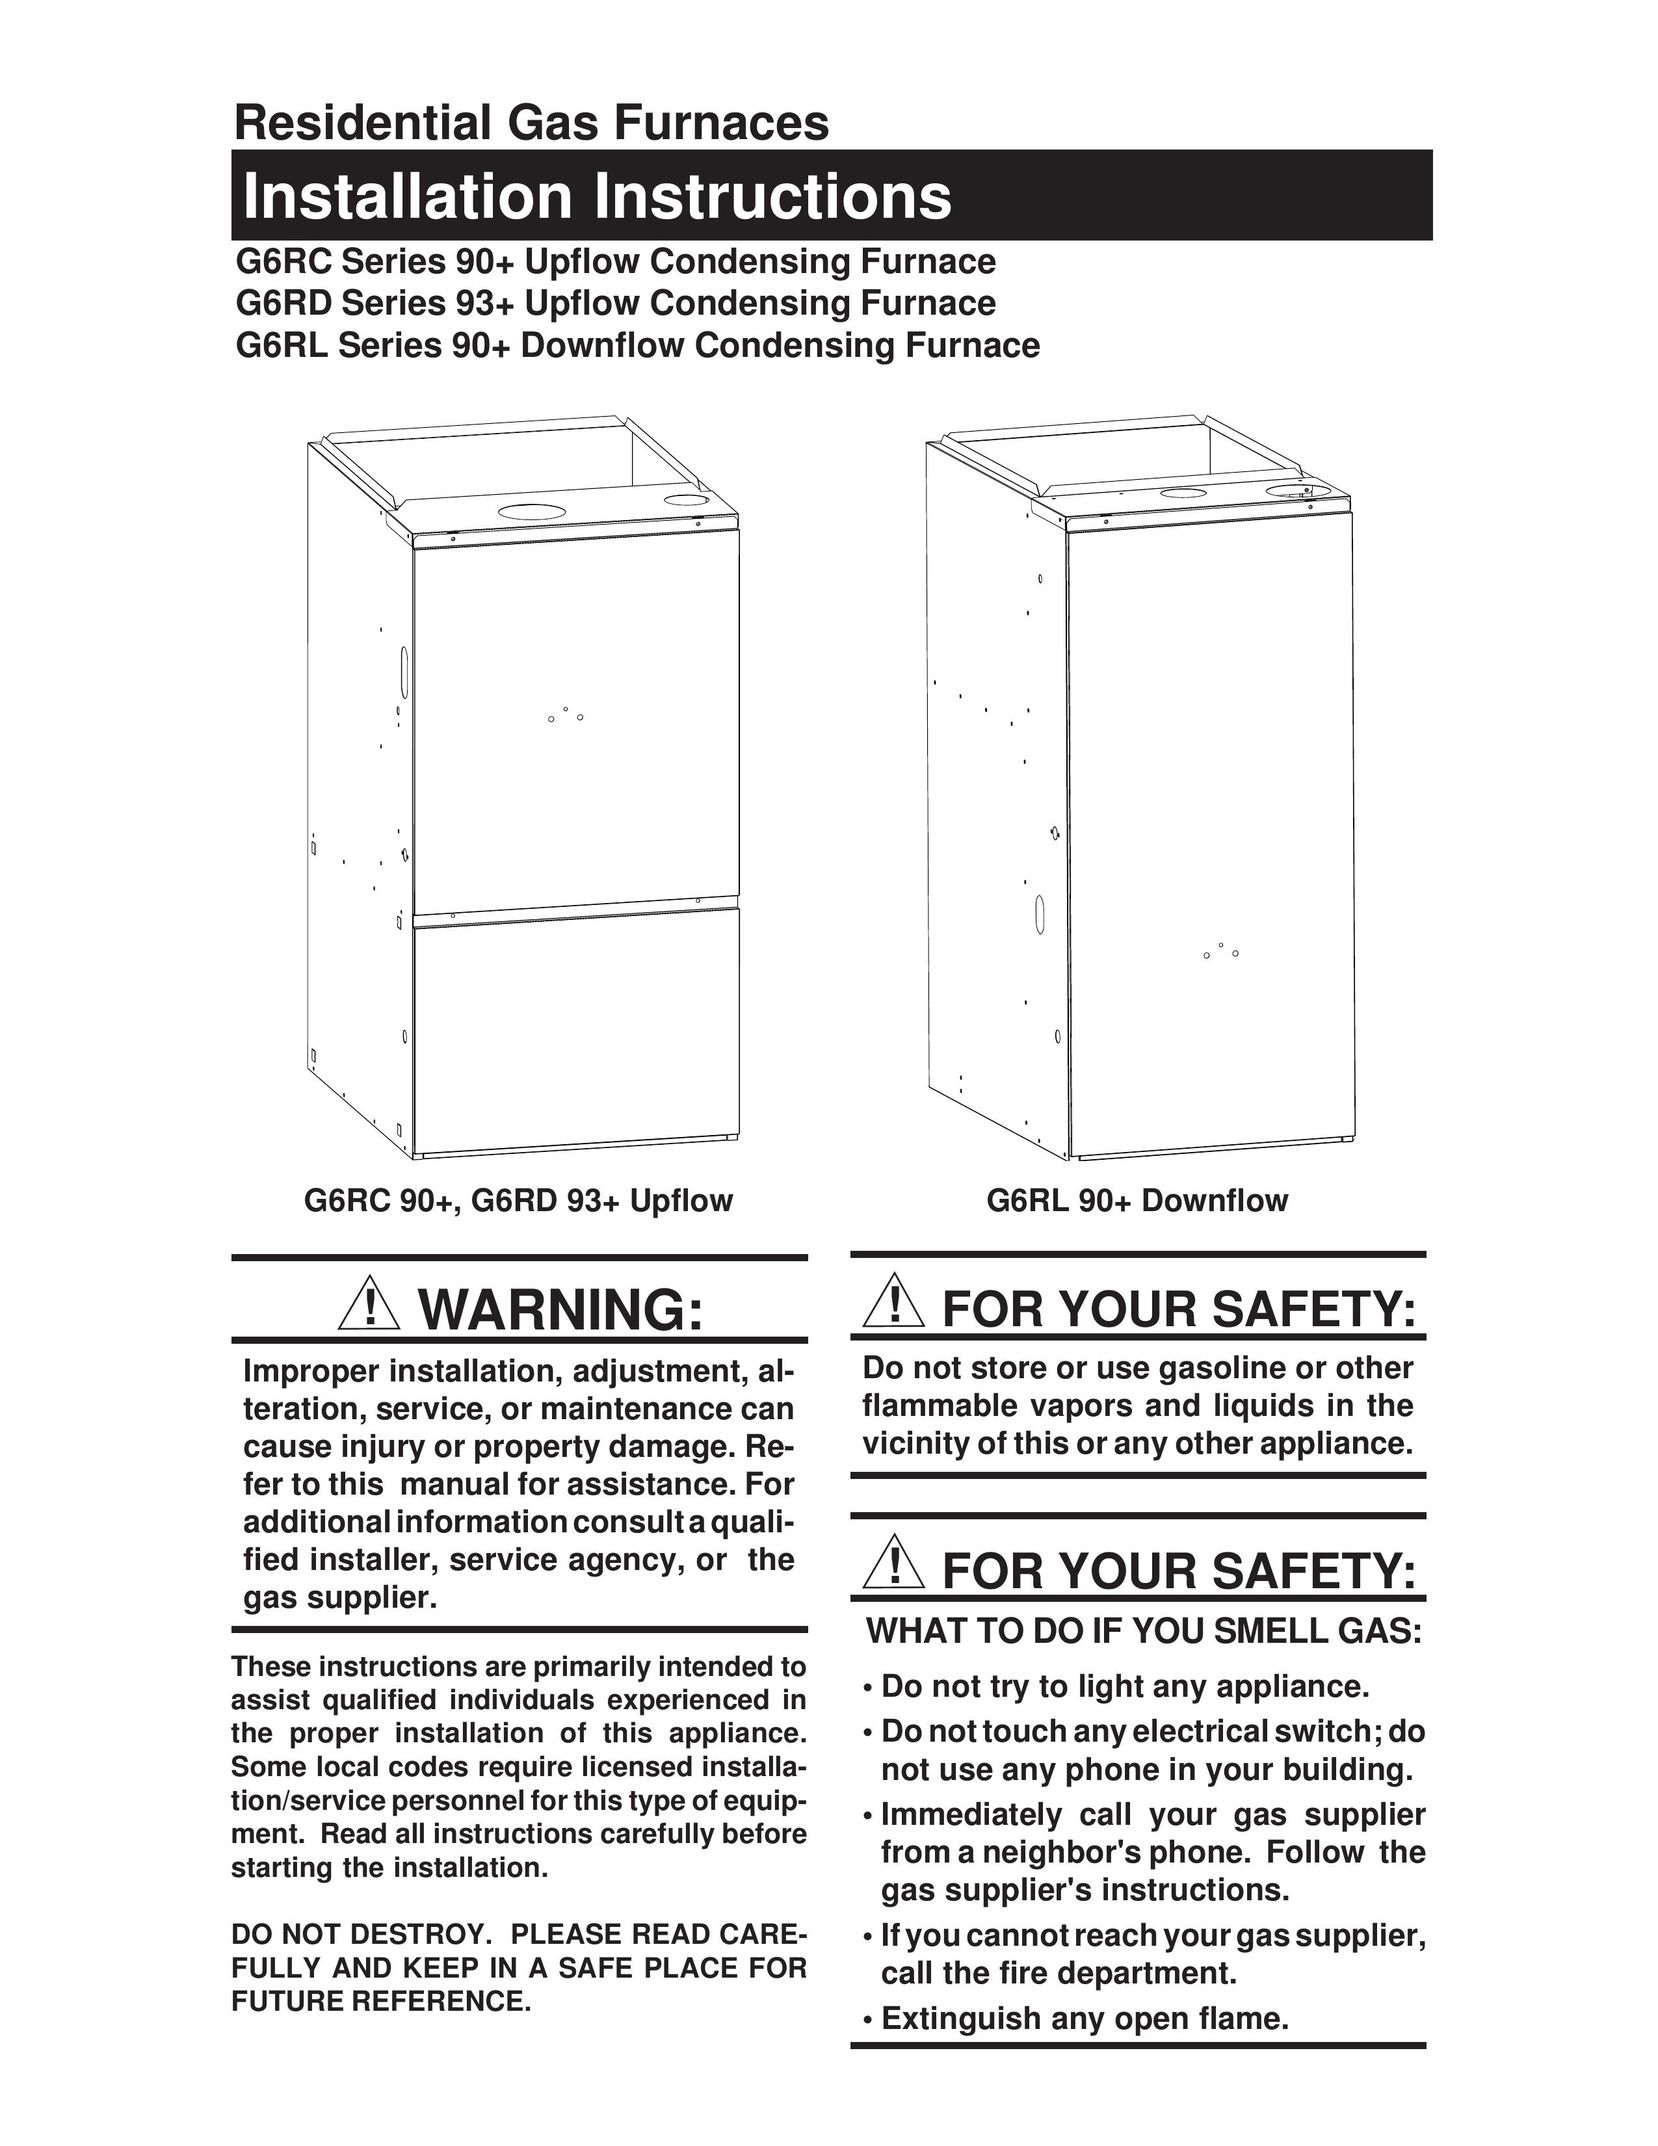 Nordyne G6RL 90+ Furnace User Manual